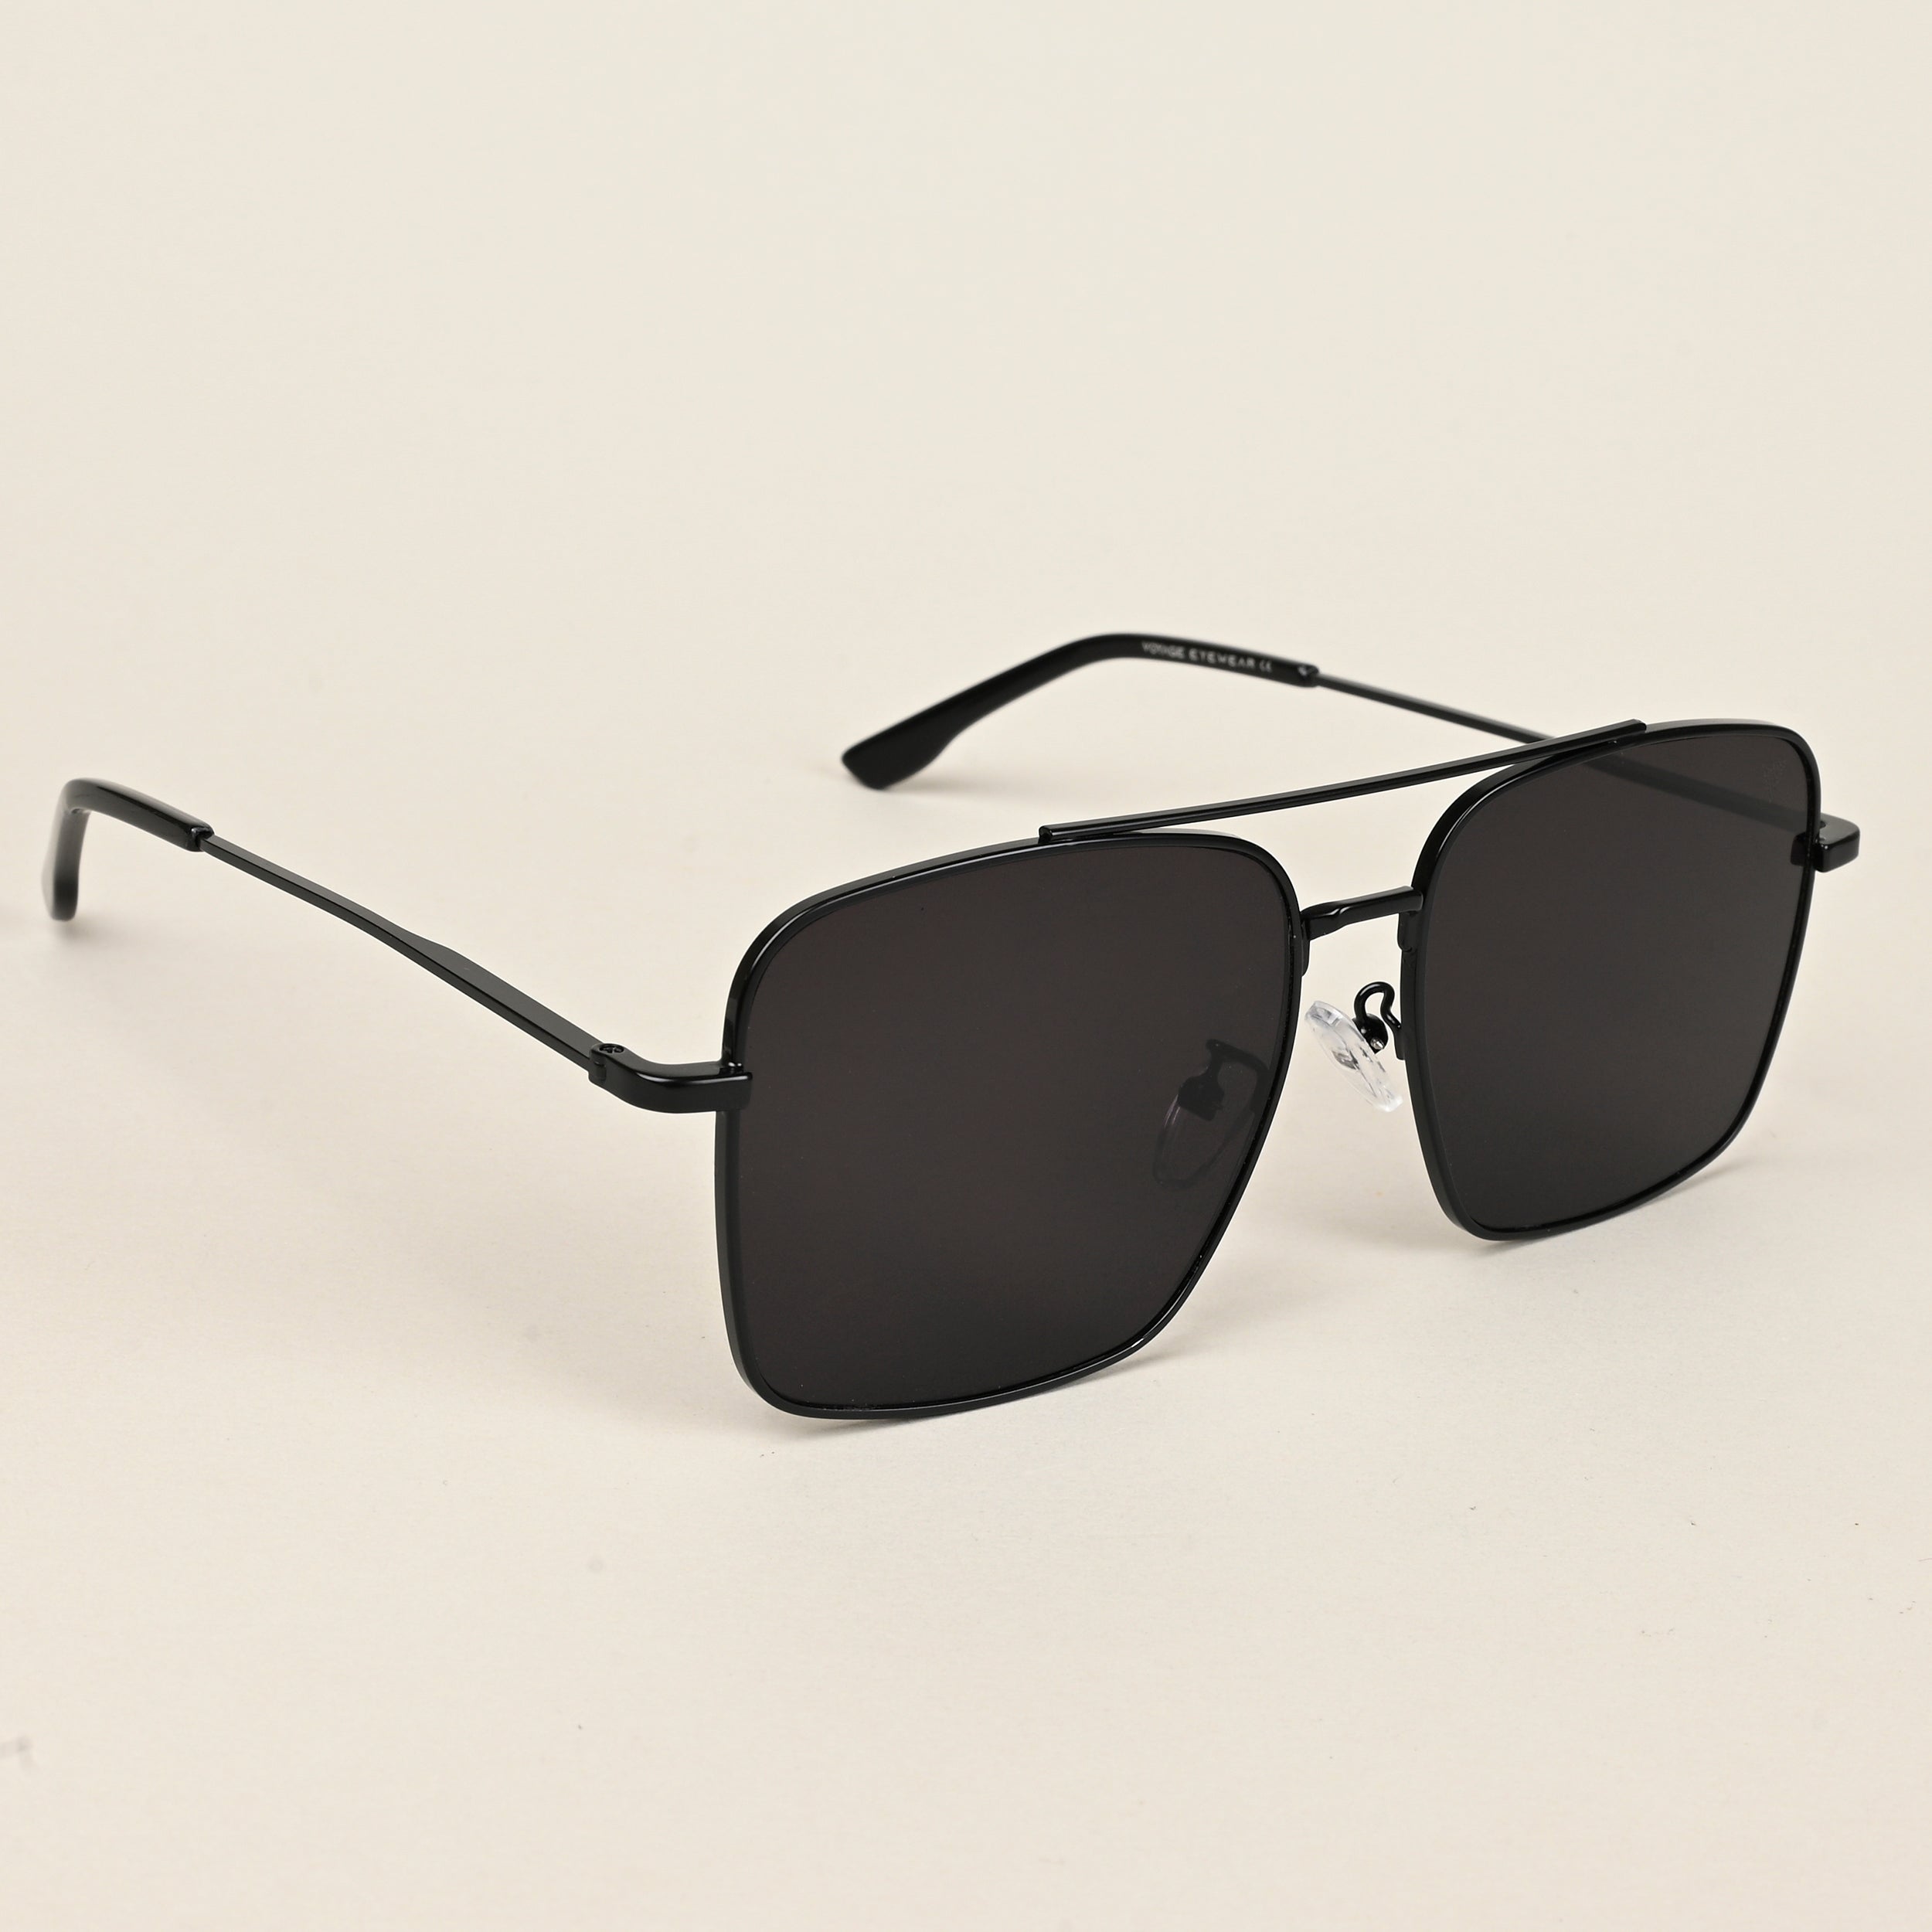 Voyage Aviator Sunglasses for Men & Women (Black Lens | Black Frame - MG5180)